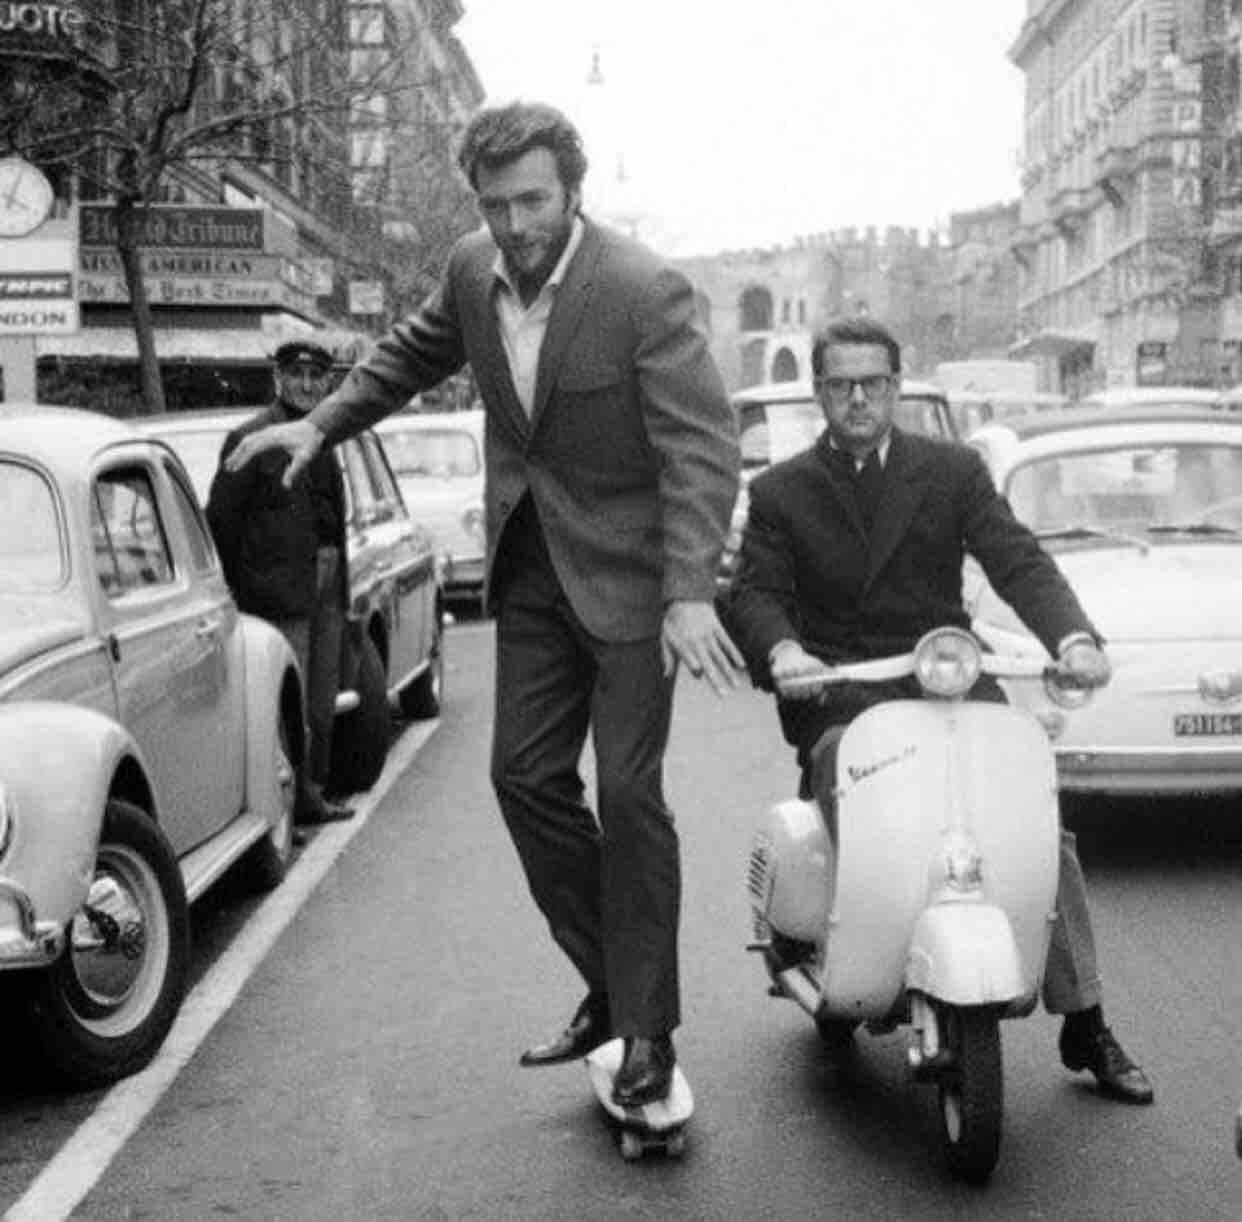 Clint Eastwood skateboarding in Rome, 1964.